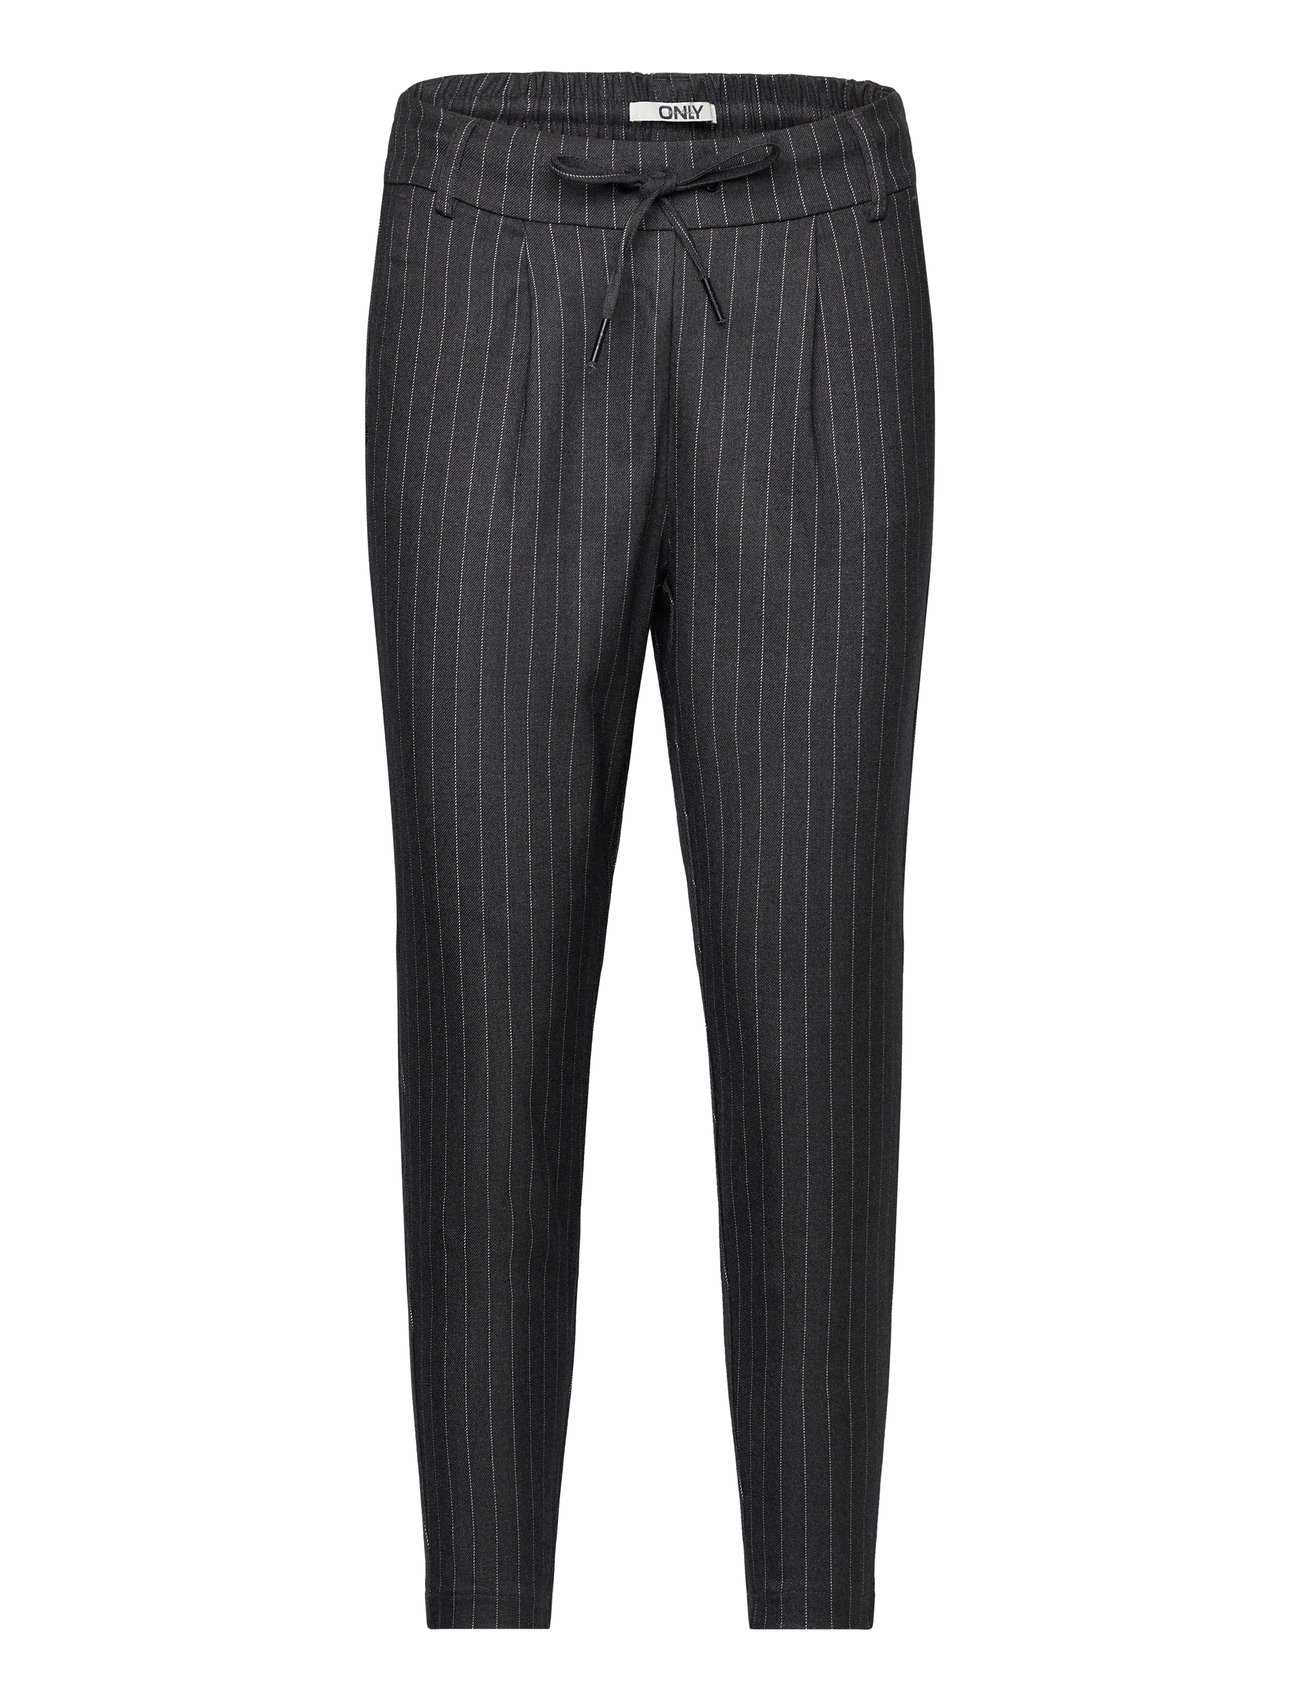 ONLY Onlpoptrash-naja Fine Stripe Pnt Noos - Slim fit trousers